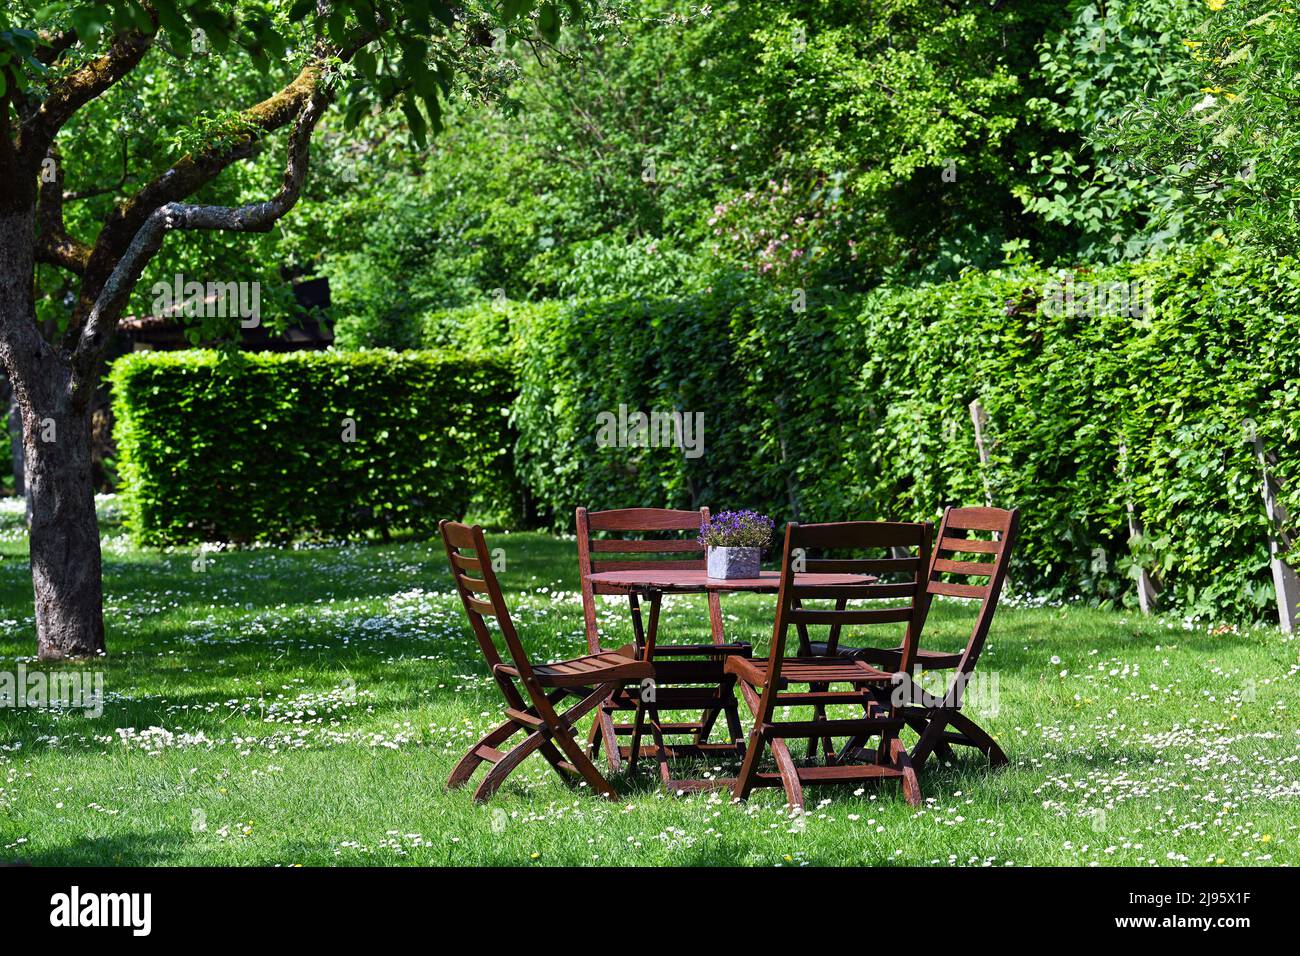 Seats in a lush garden Stock Photo